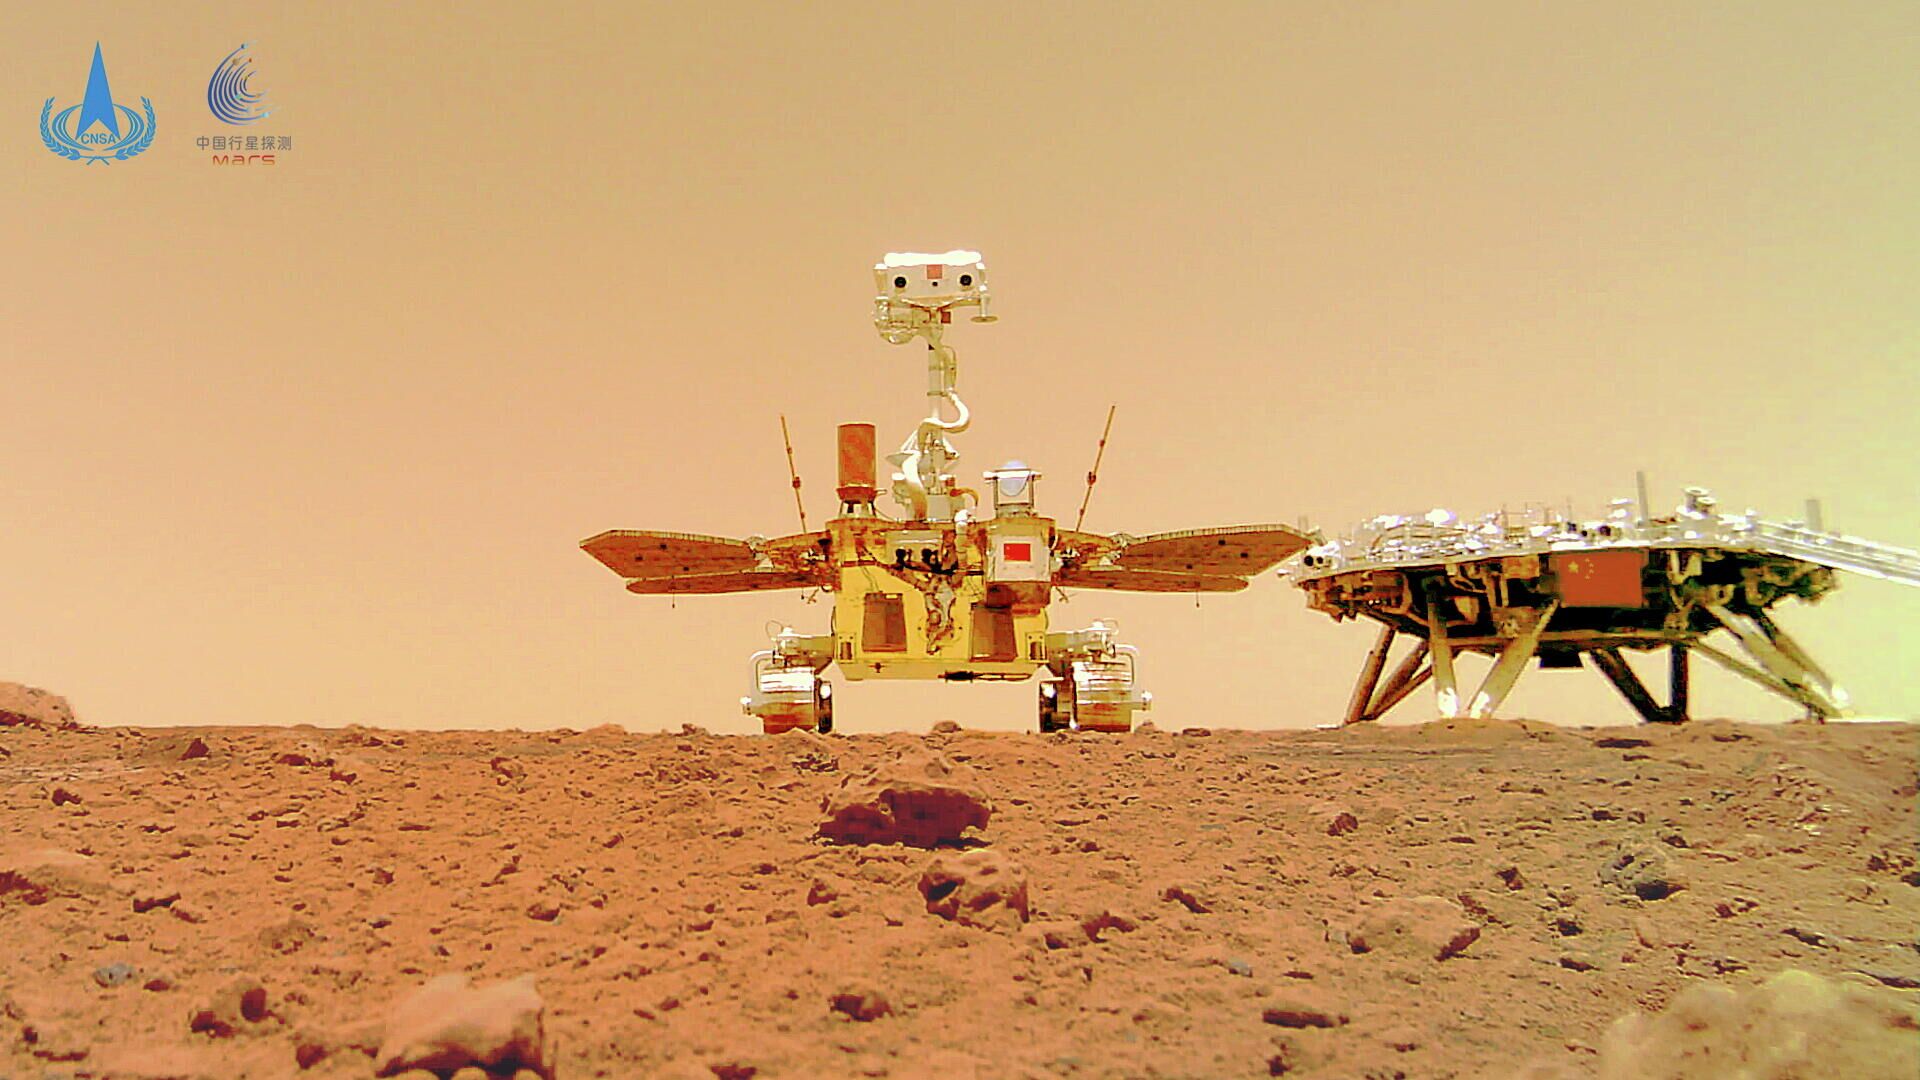 Китайский марсоход Zhurong и посадочный модуль миссии Tianwen-1 на поверхности Марса  - РИА Новости, 1920, 27.06.2021